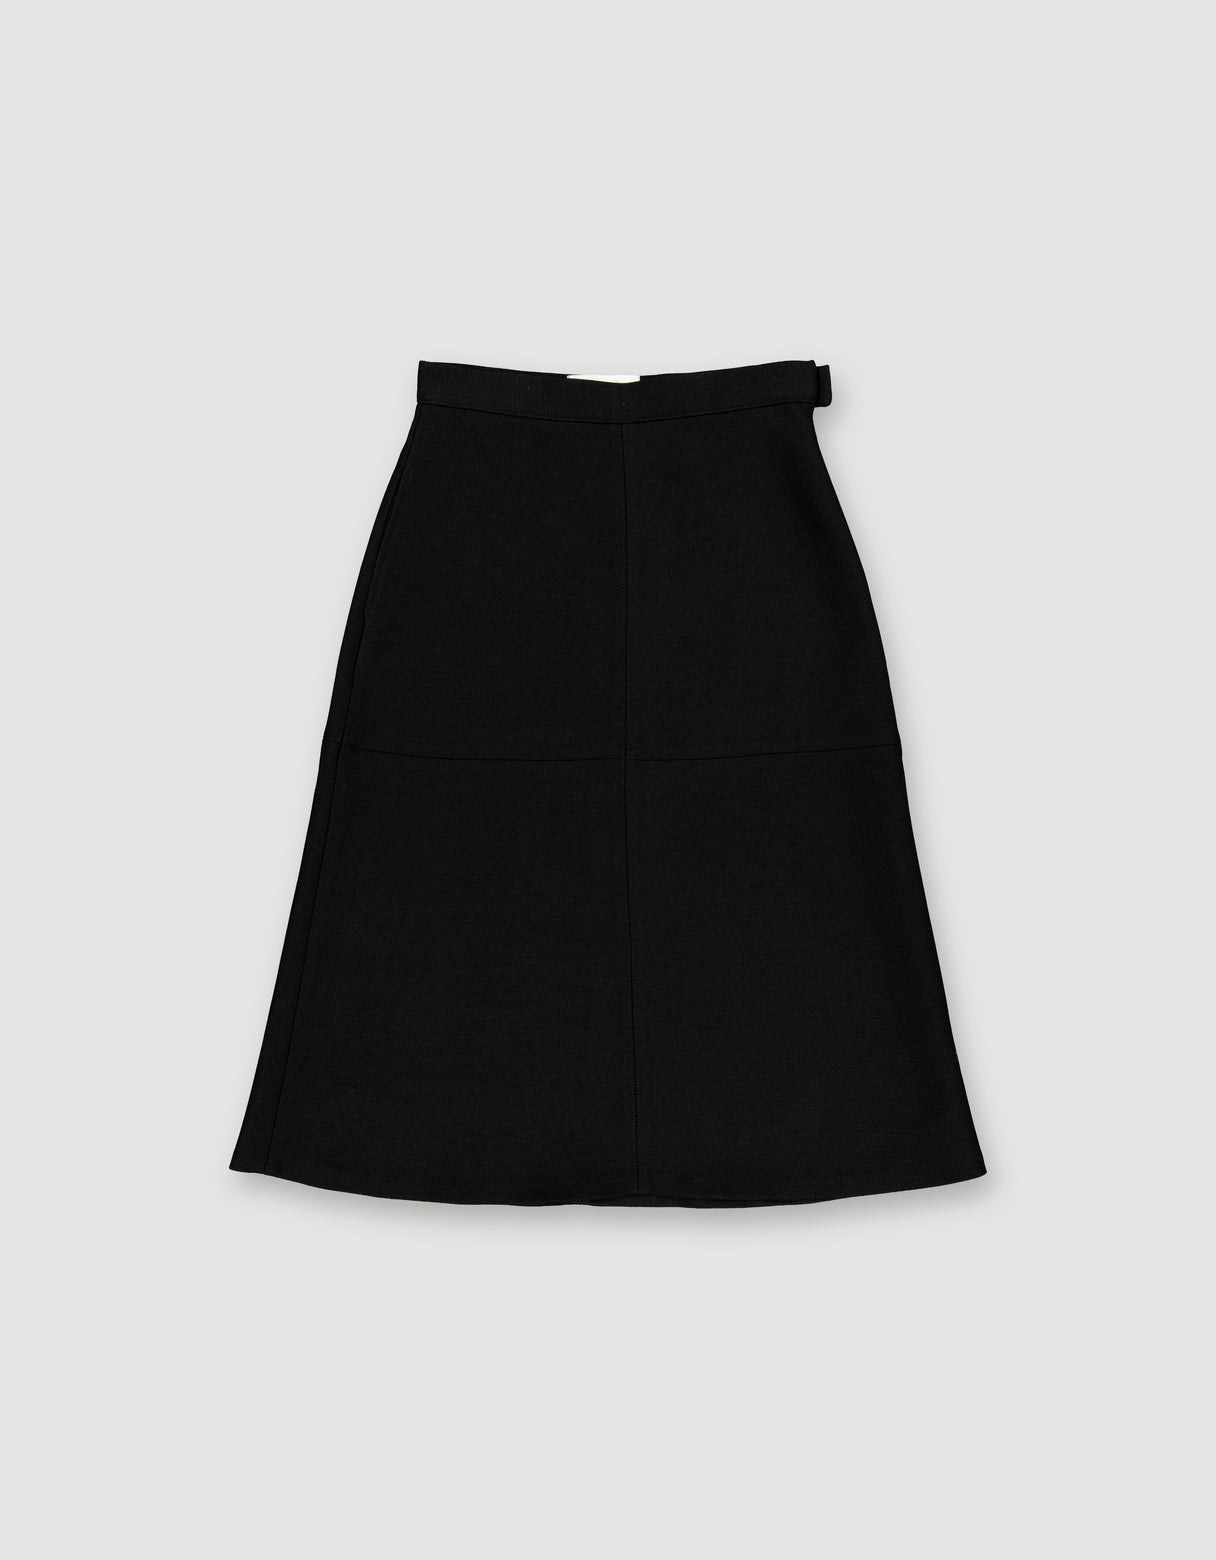 Archetype Silk & Wool Panel Skirt